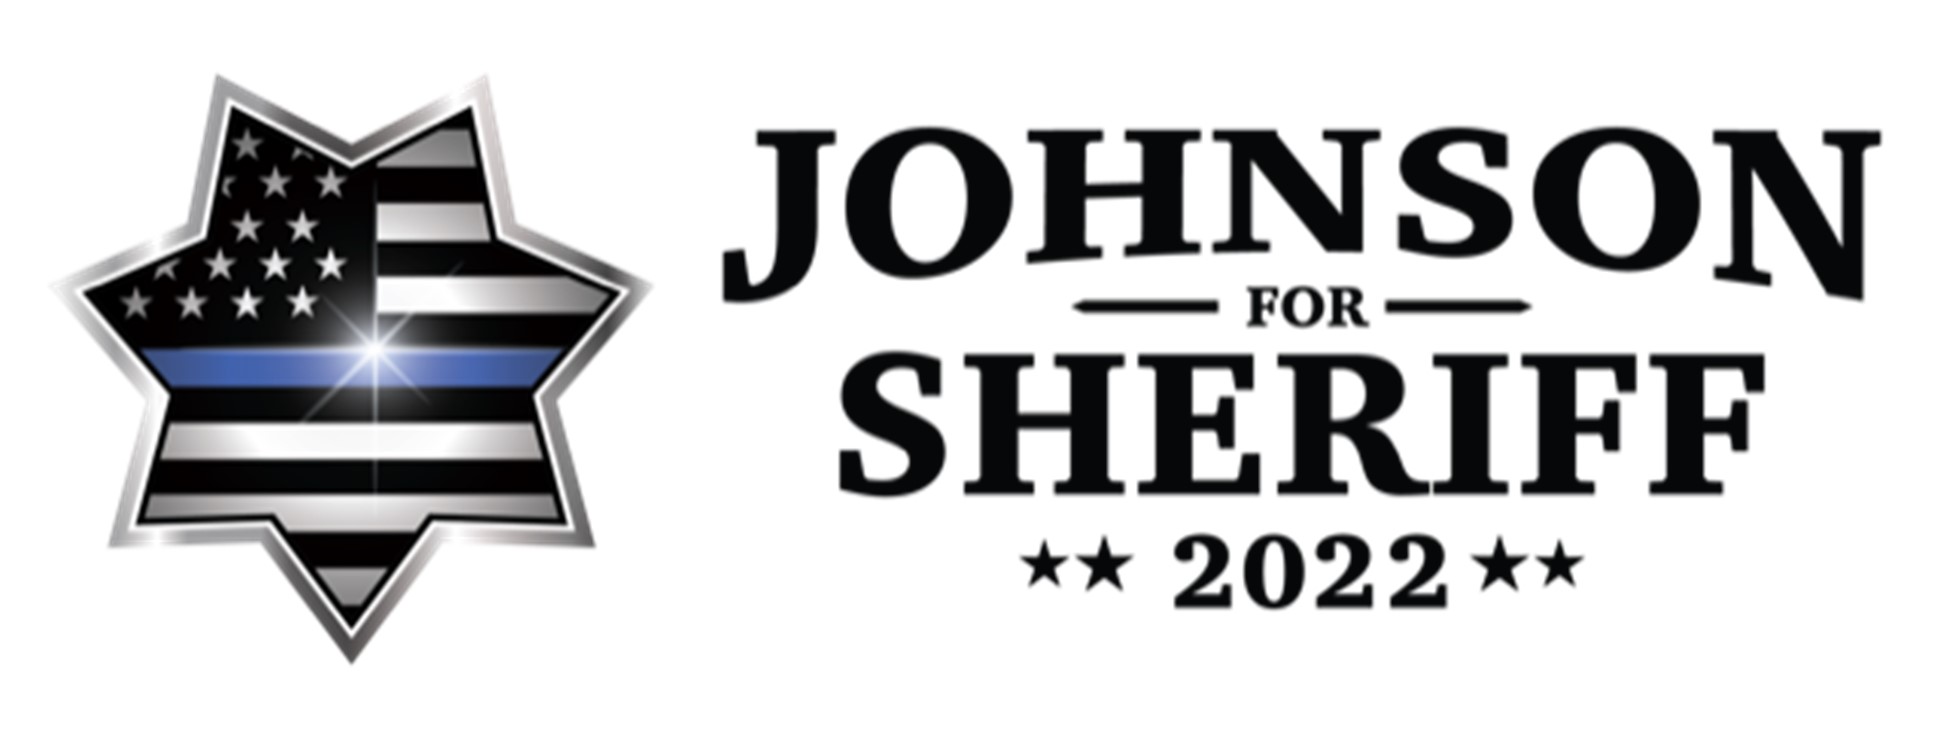 Johnson for Sheriff 2022